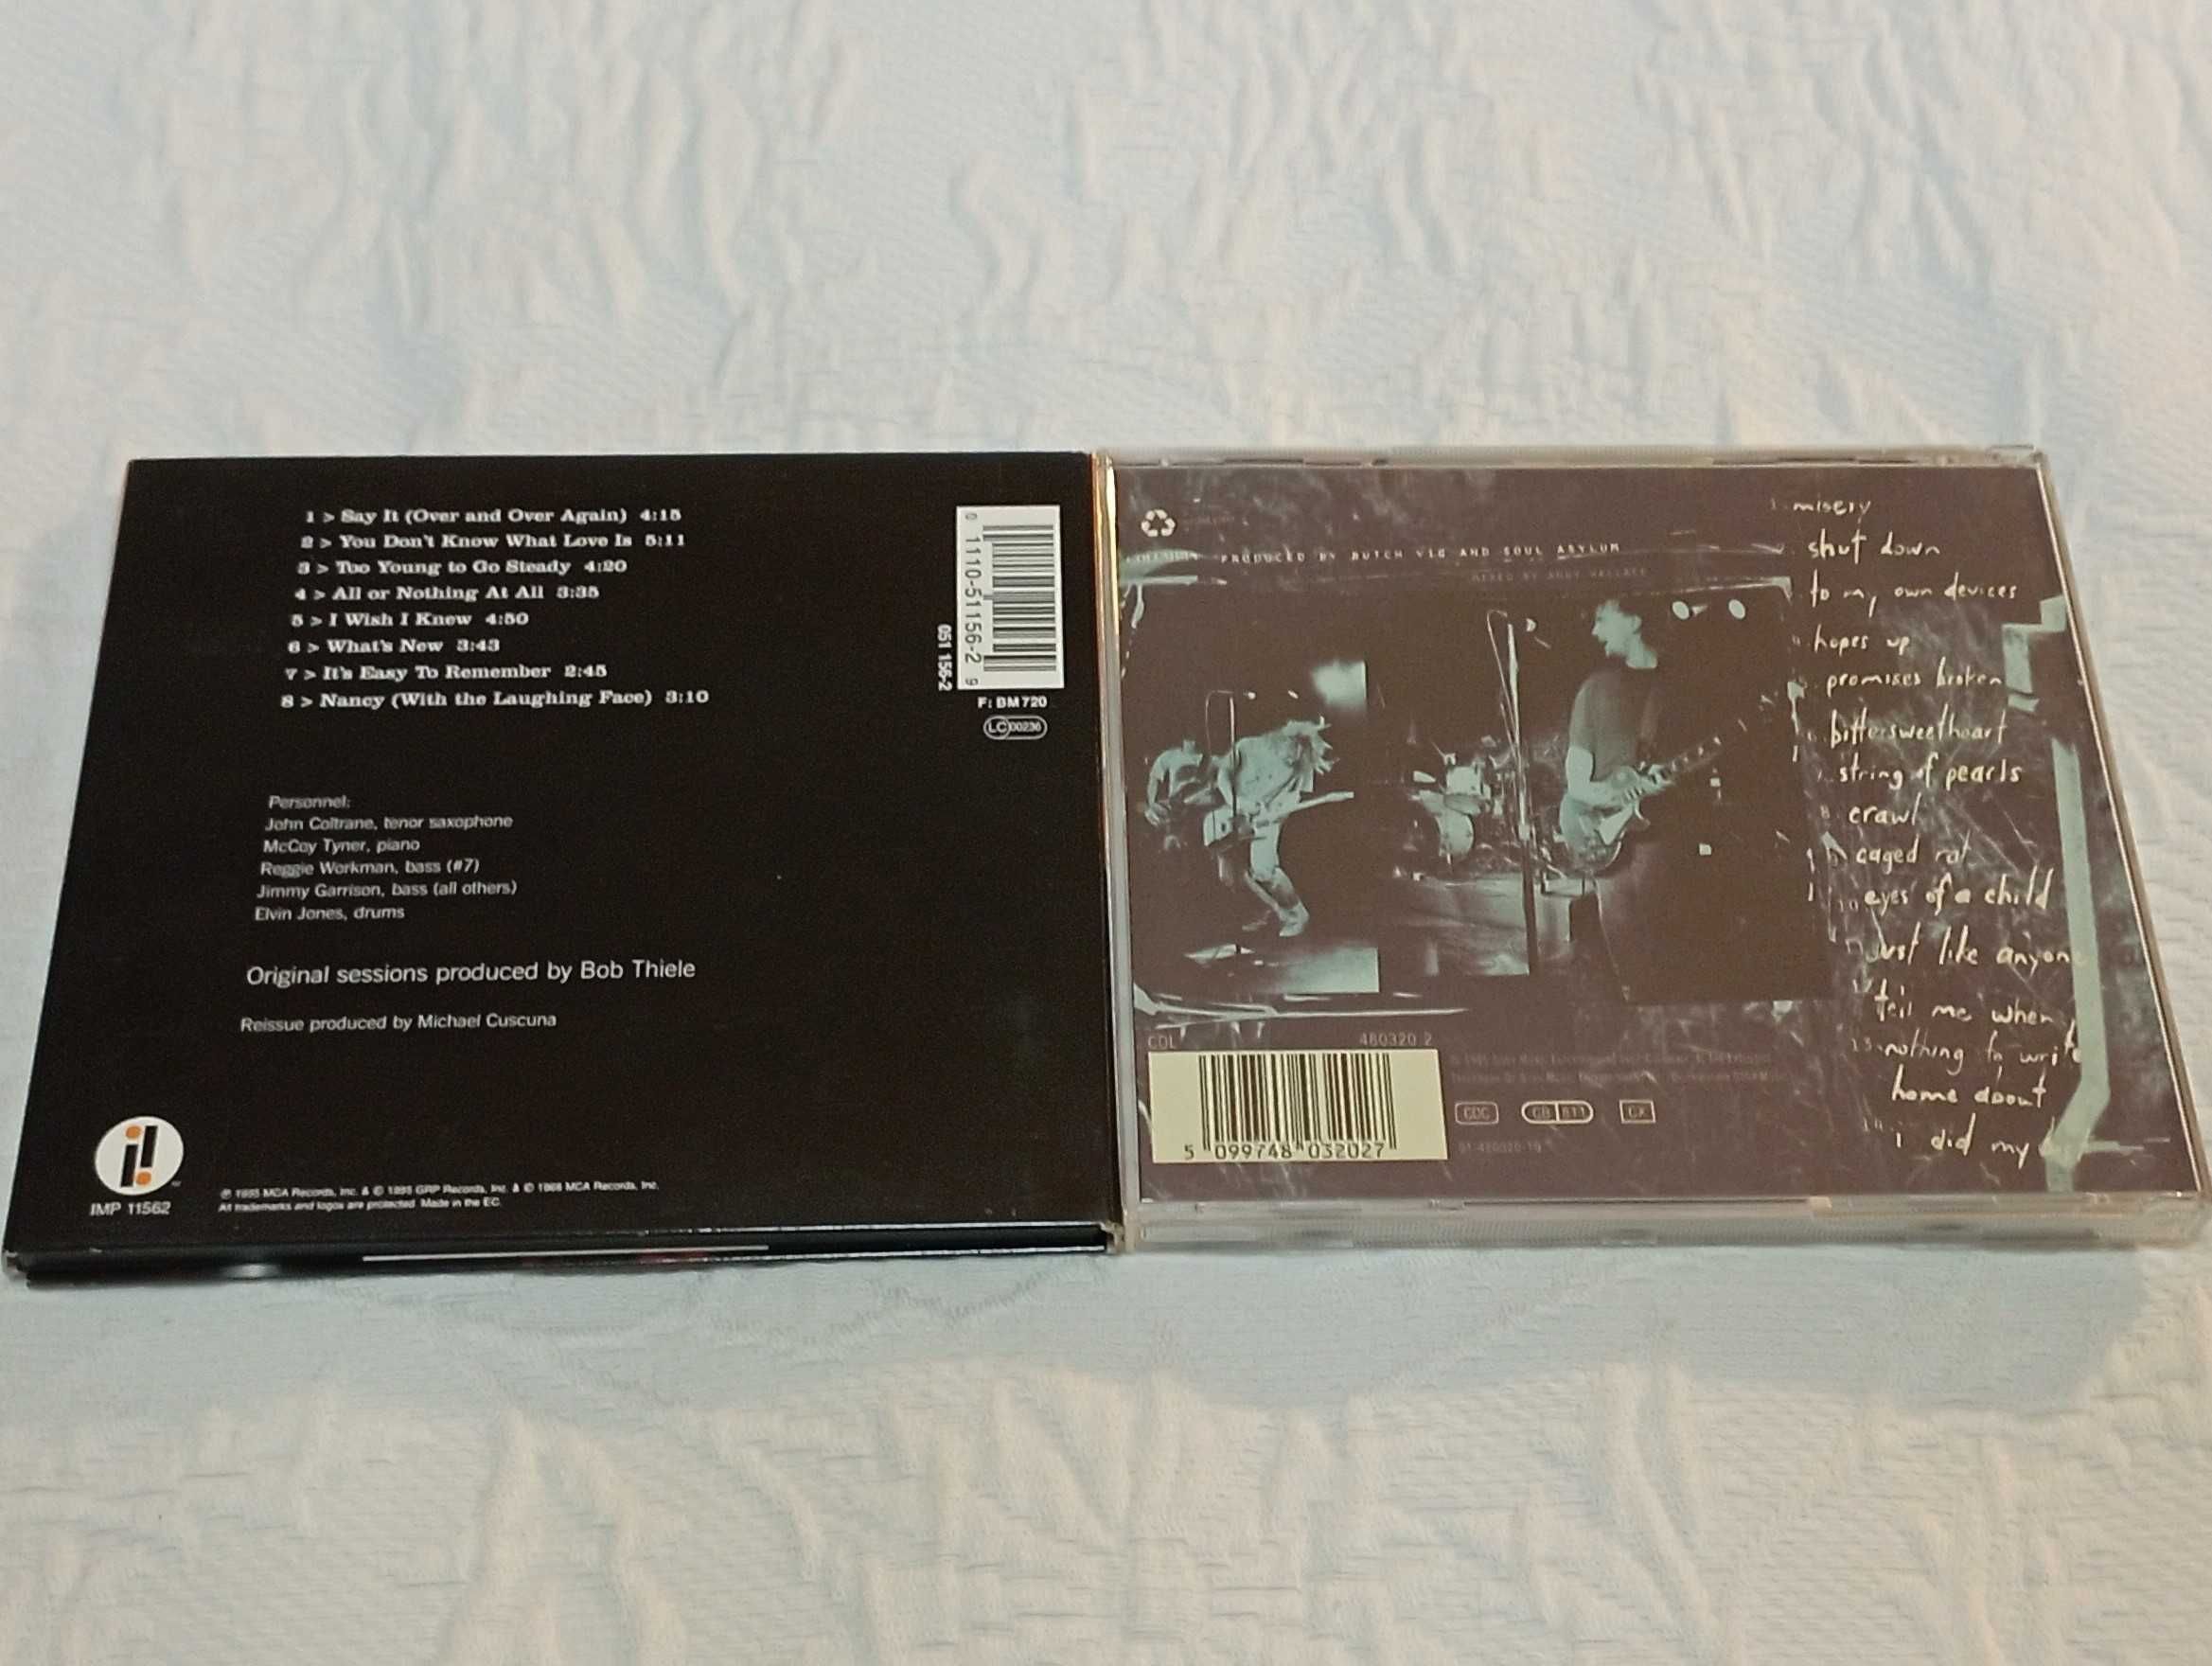 2 cds de musica: john coltrane quartet e soul asylum